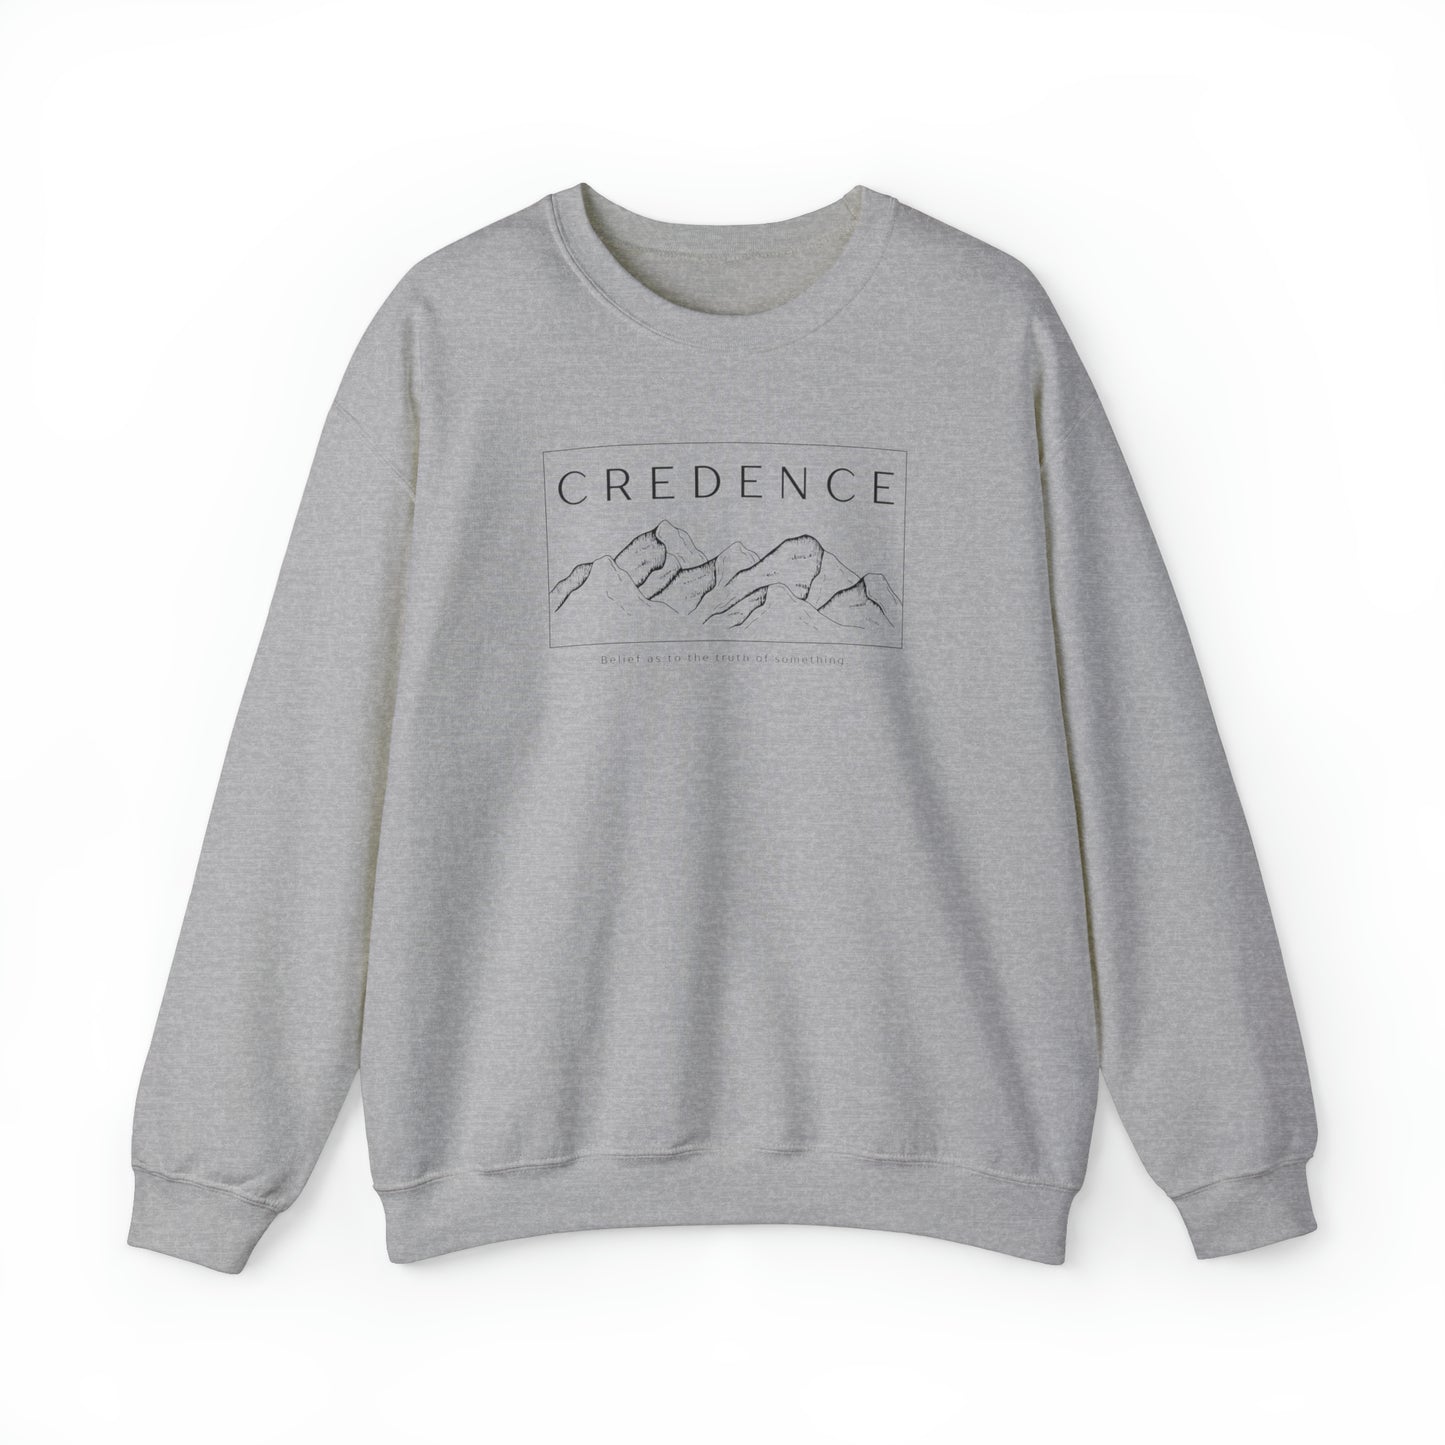 Credence Crewneck Sweatshirt Pullover